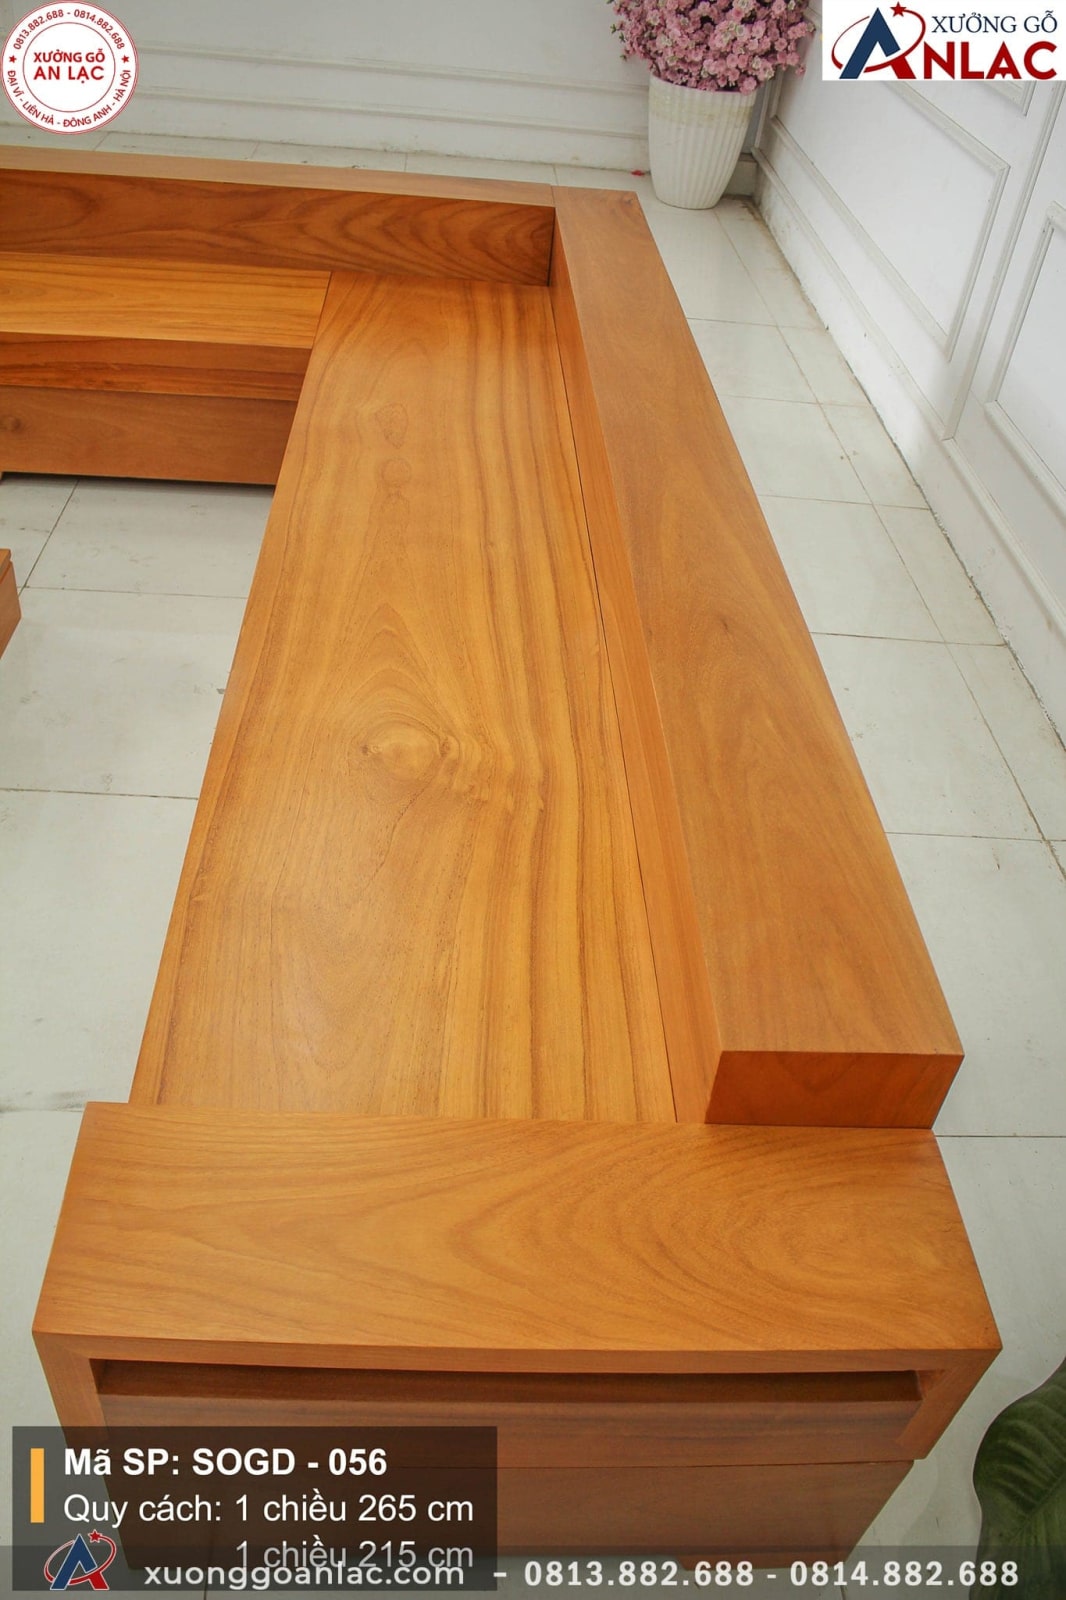 Bộ sofa nguyên khối gỗ gõ đỏ kiểu chữ L là lựa chọn hoàn hảo cho những ai yêu thích sự bền vững và sang trọng. Với chất liệu gỗ đỏ Nam Phi, chiếc sofa này sẽ không chỉ đem lại sự tiện nghi cho người sử dụng mà còn làm tôn lên vẻ đẹp tự nhiên của căn phòng. Hãy cùng thưởng thức nó trên hình ảnh mà chúng tôi cung cấp.